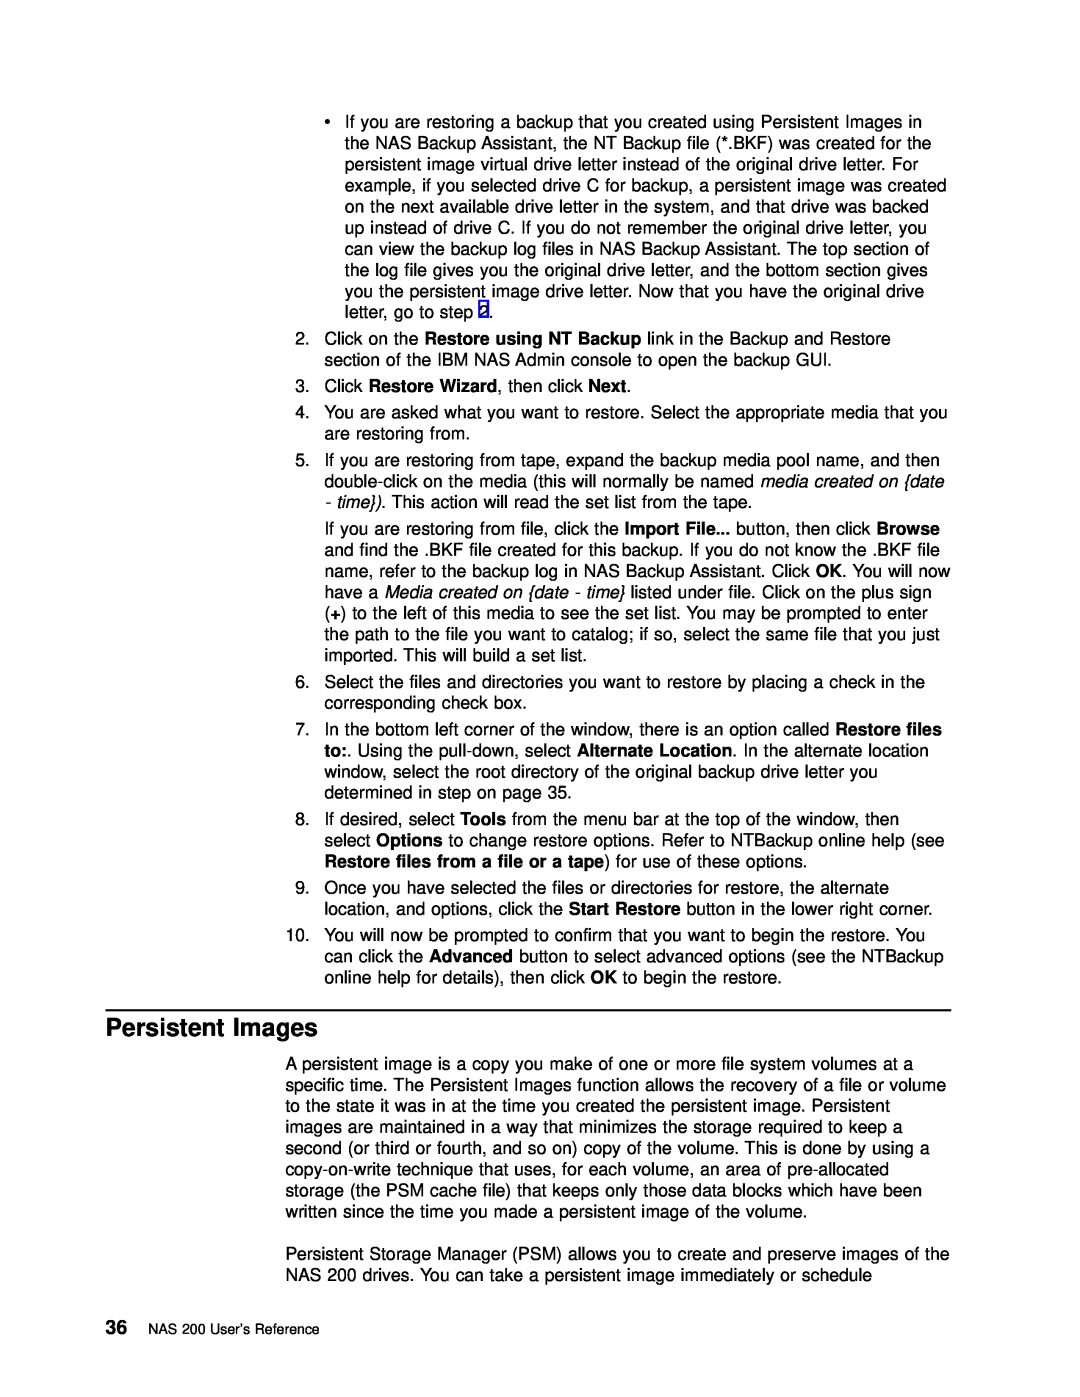 IBM 201 manual Persistent Images 